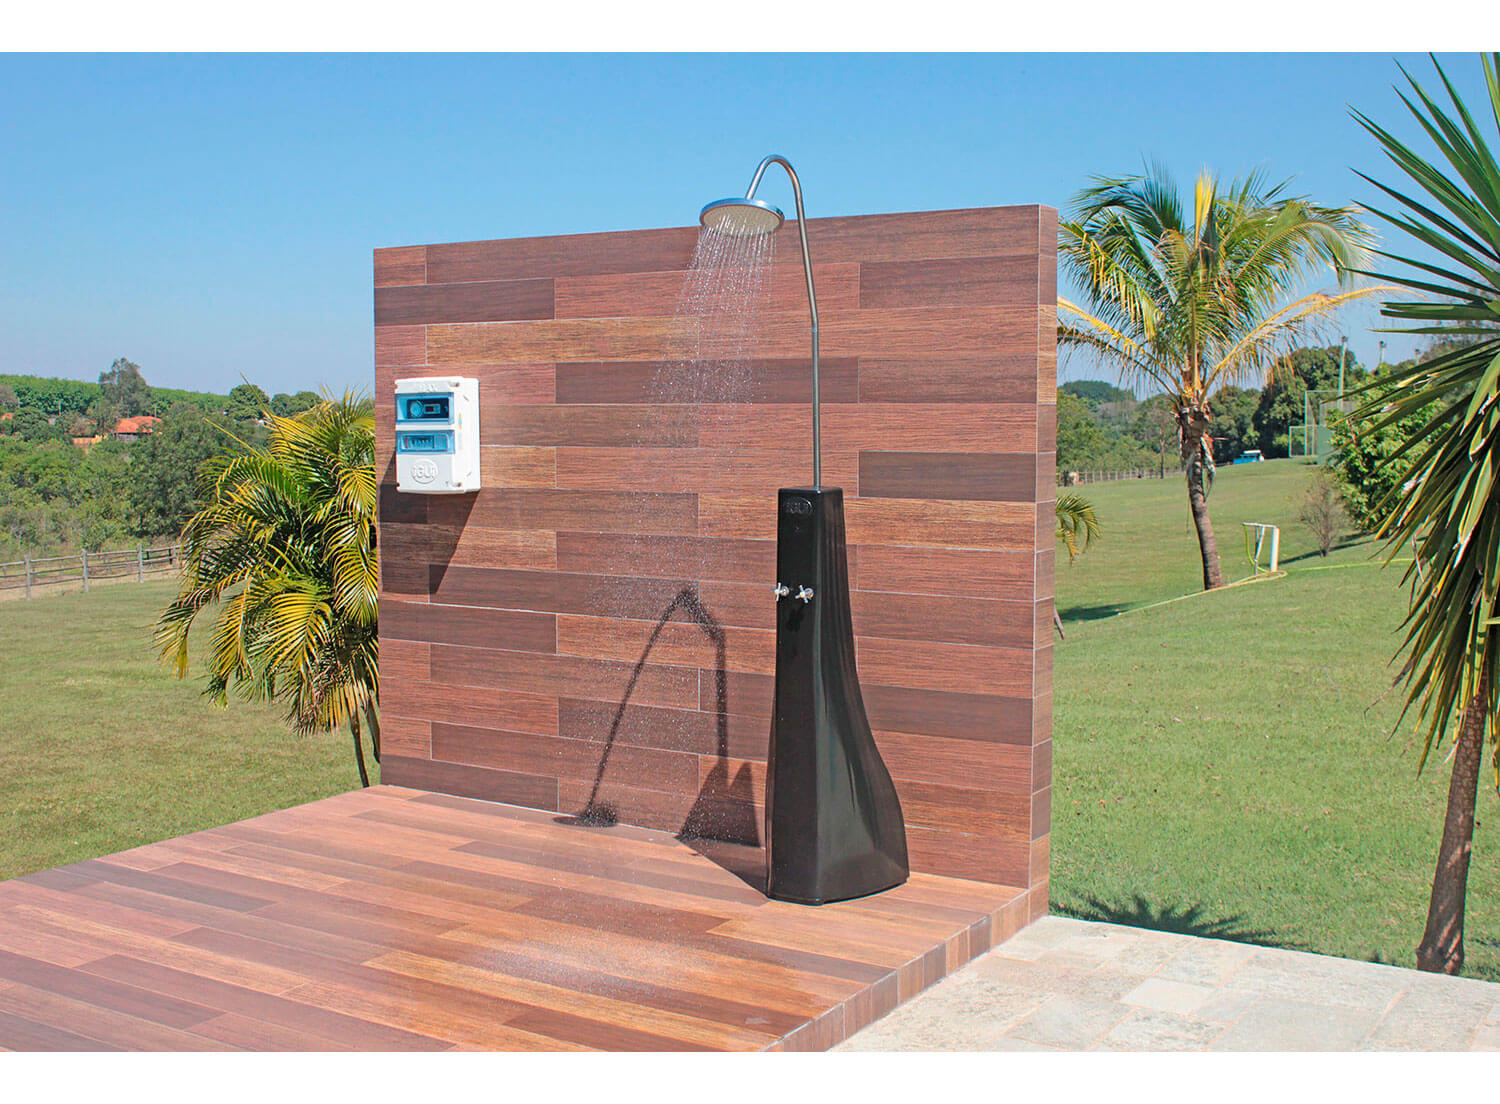 Ducha Solar relaxante agradável quente água piscina energia solar